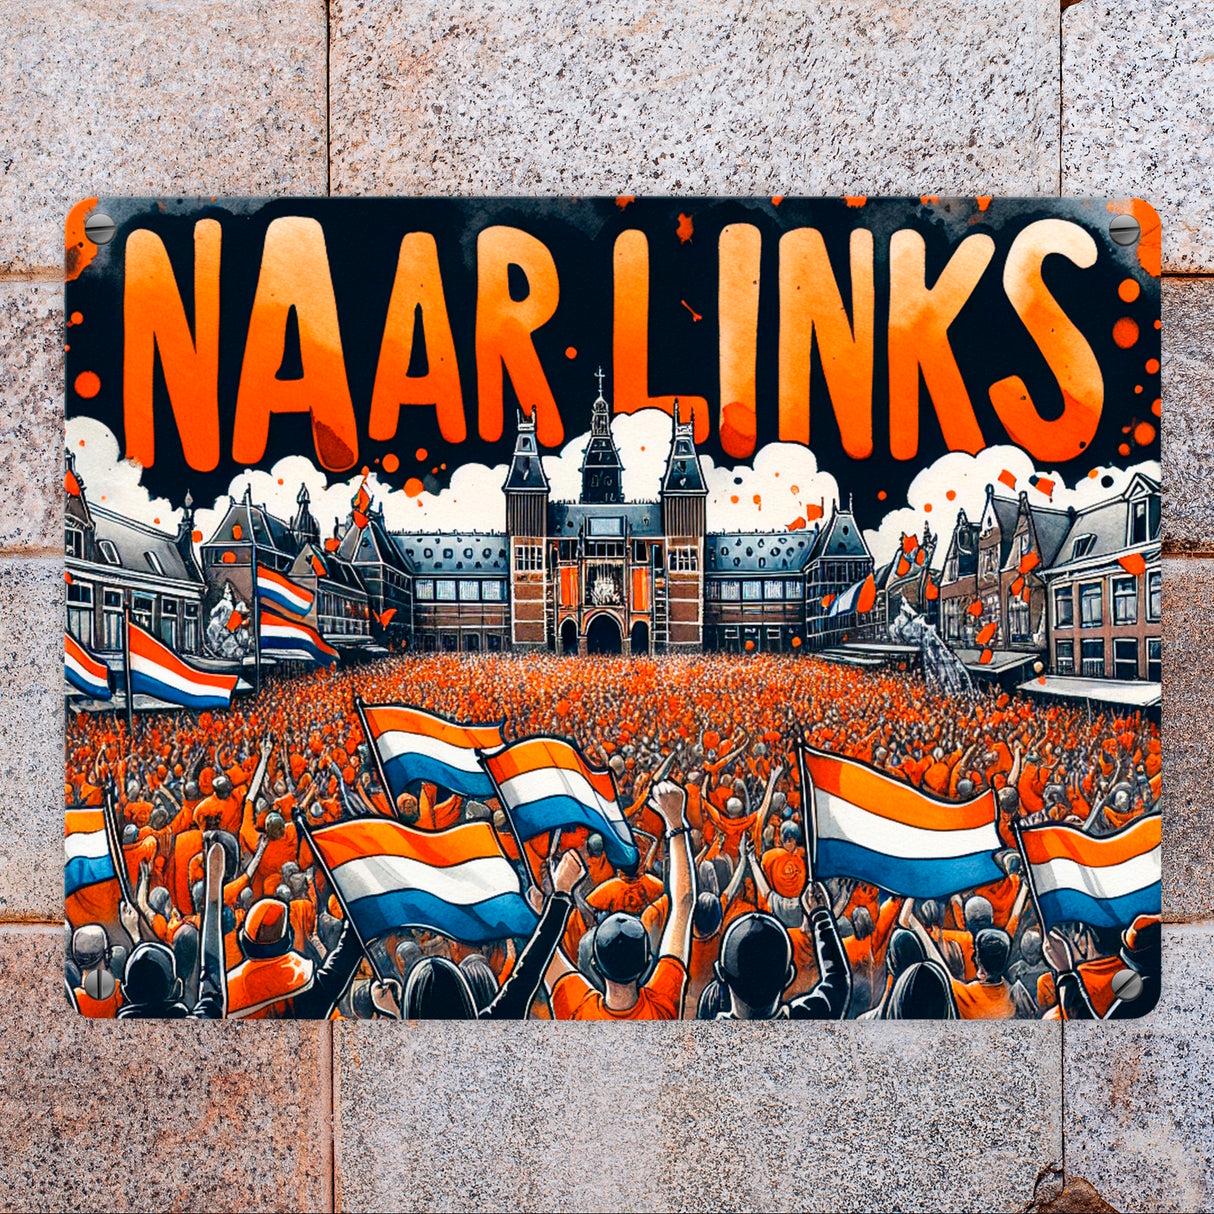 Niederländische Fußballfans Metallschild in 15x20 cm mit Spruch Naar Links